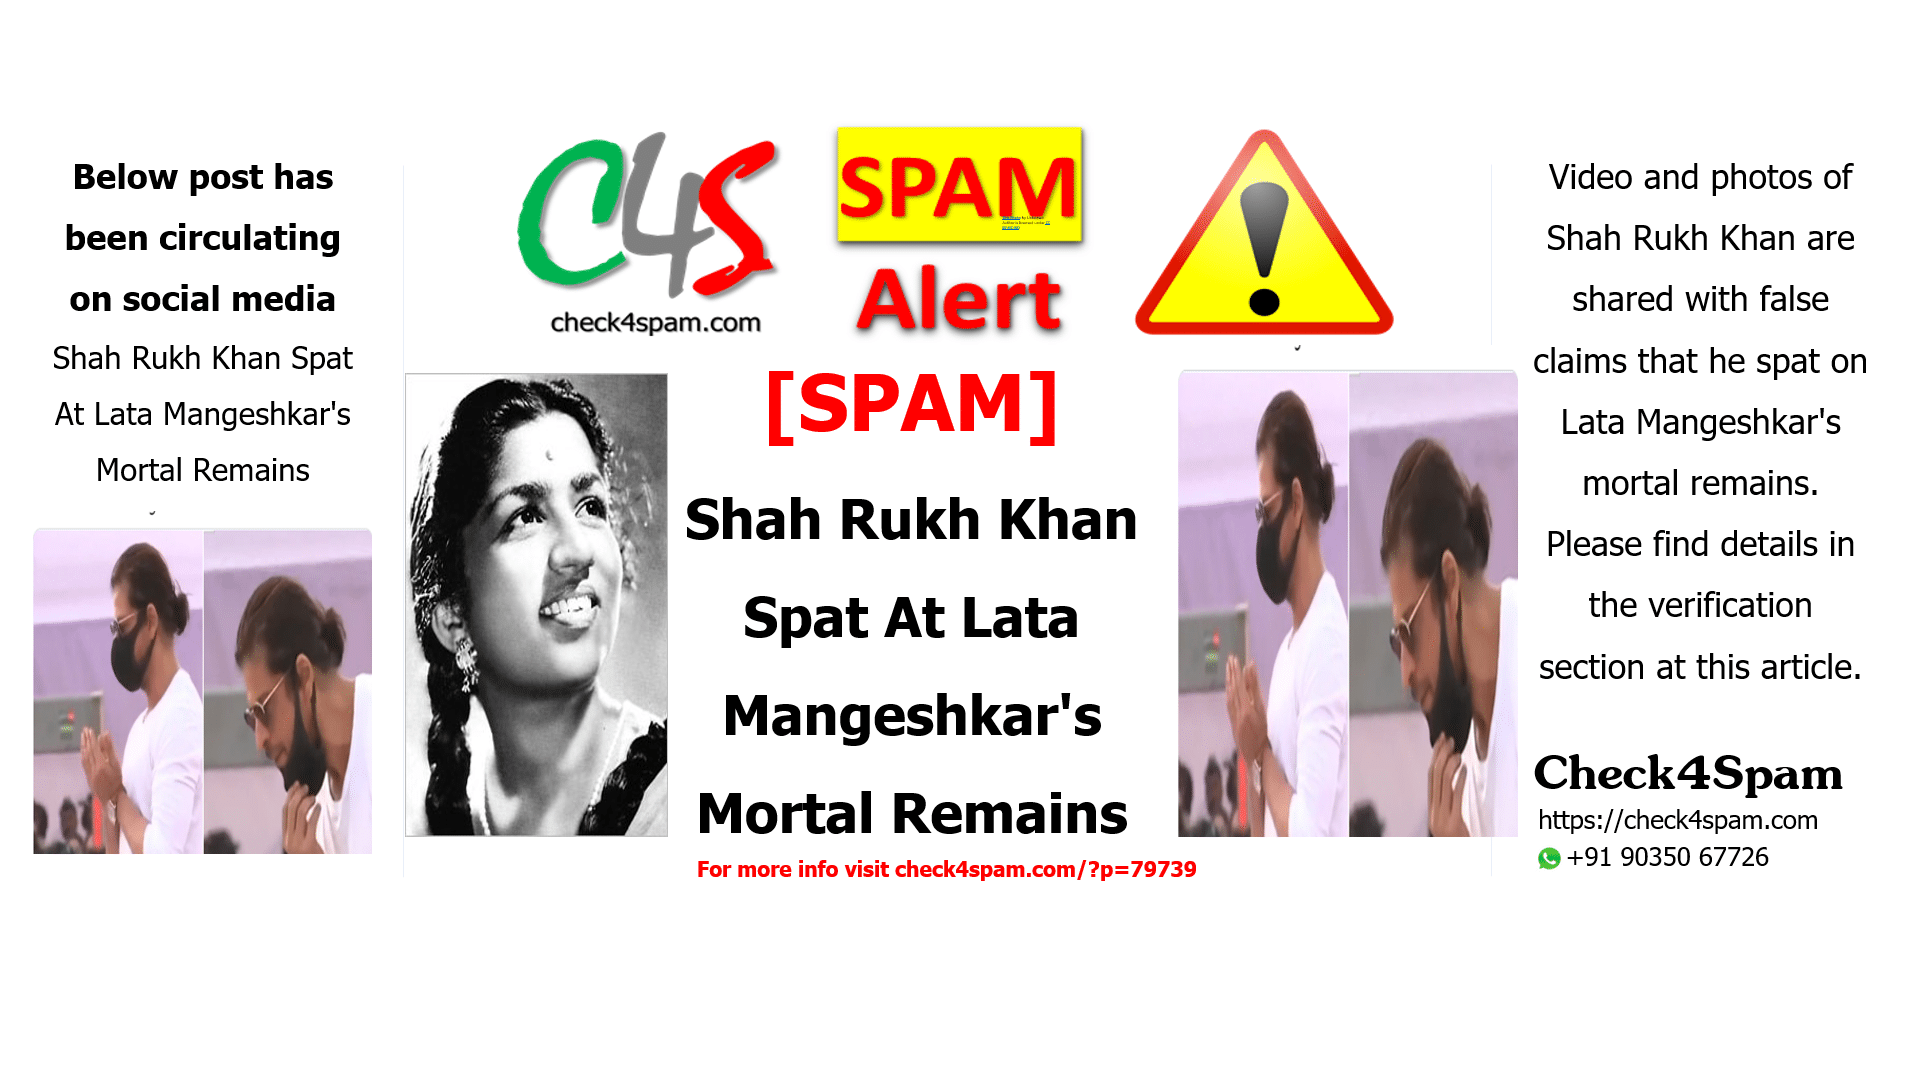 Shah Rukh Khan Spat At Lata Mangeshkar's Mortal Remains